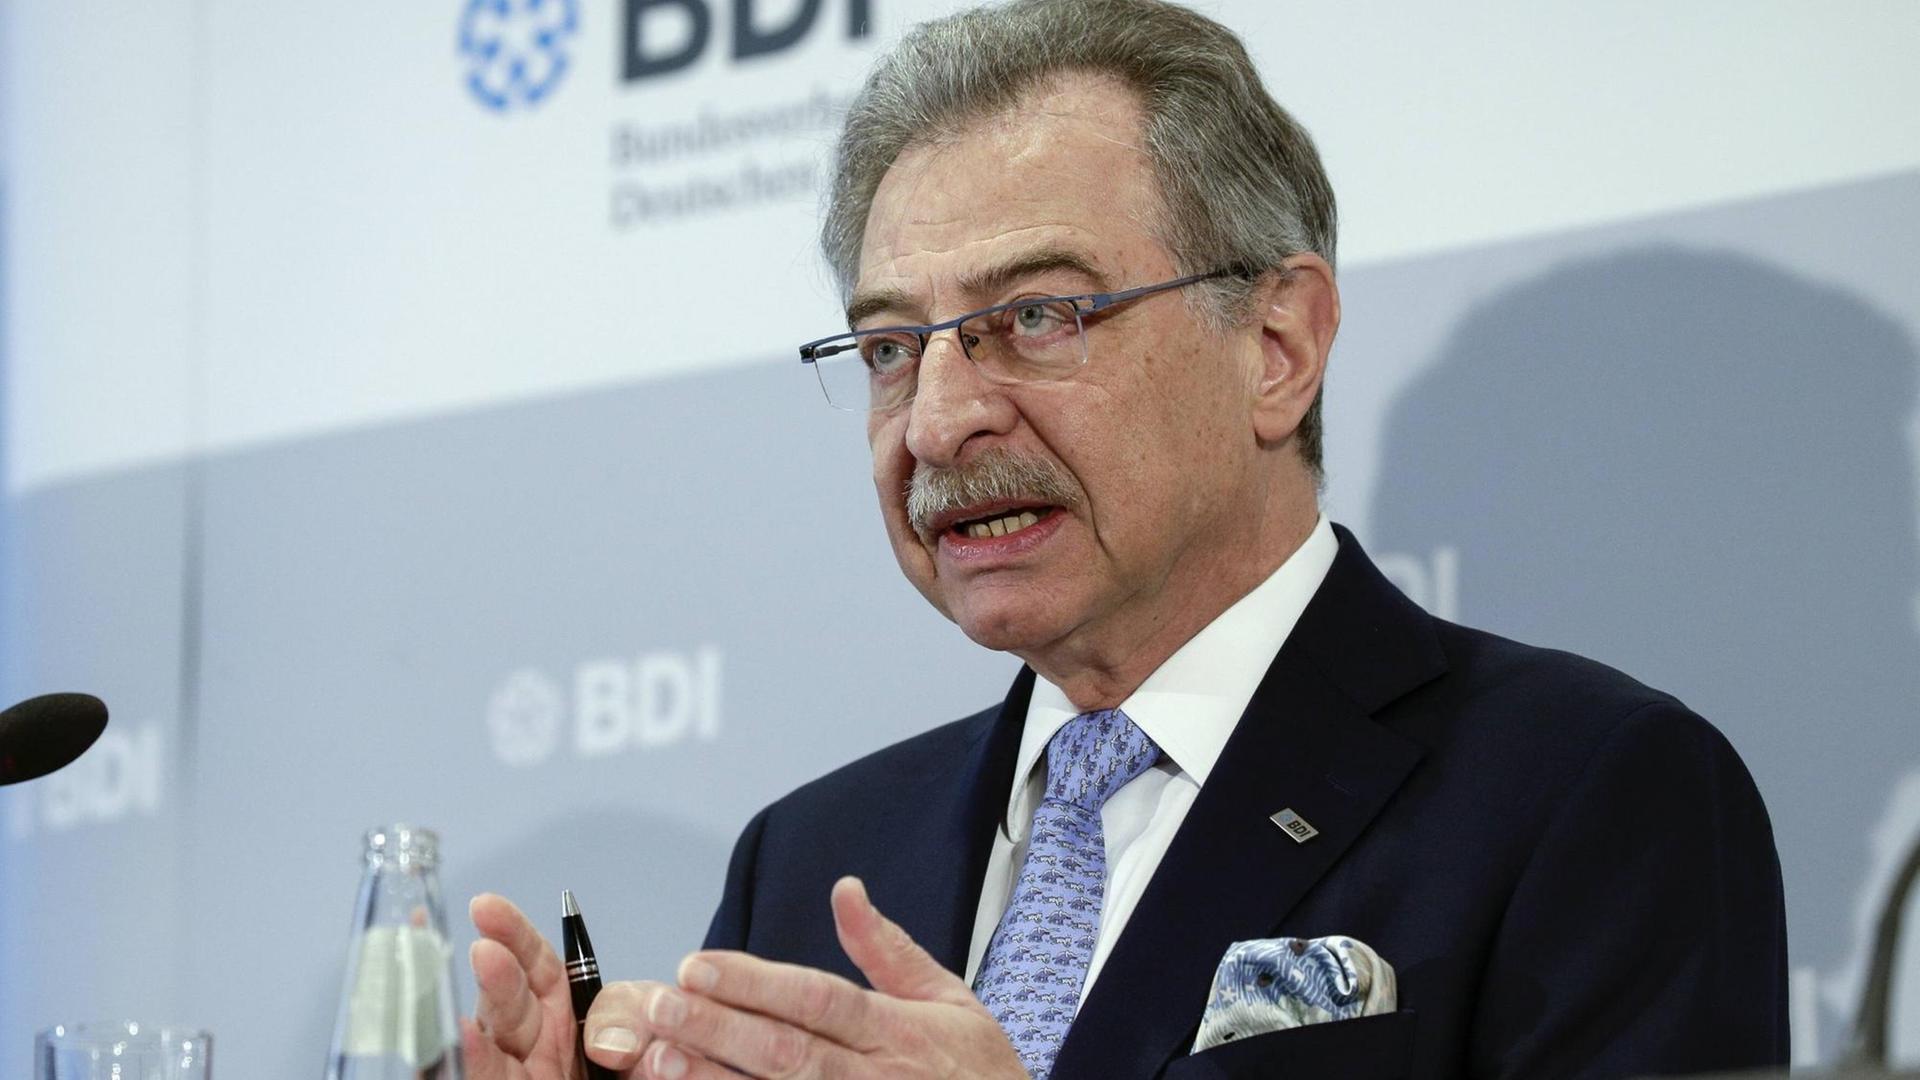 Der Präsident des Bundesverband der Deutschen Industrie, BDI, Dieter Kempf, spricht auf einer Pressekonferenz seiner Organisation im Januar 2019